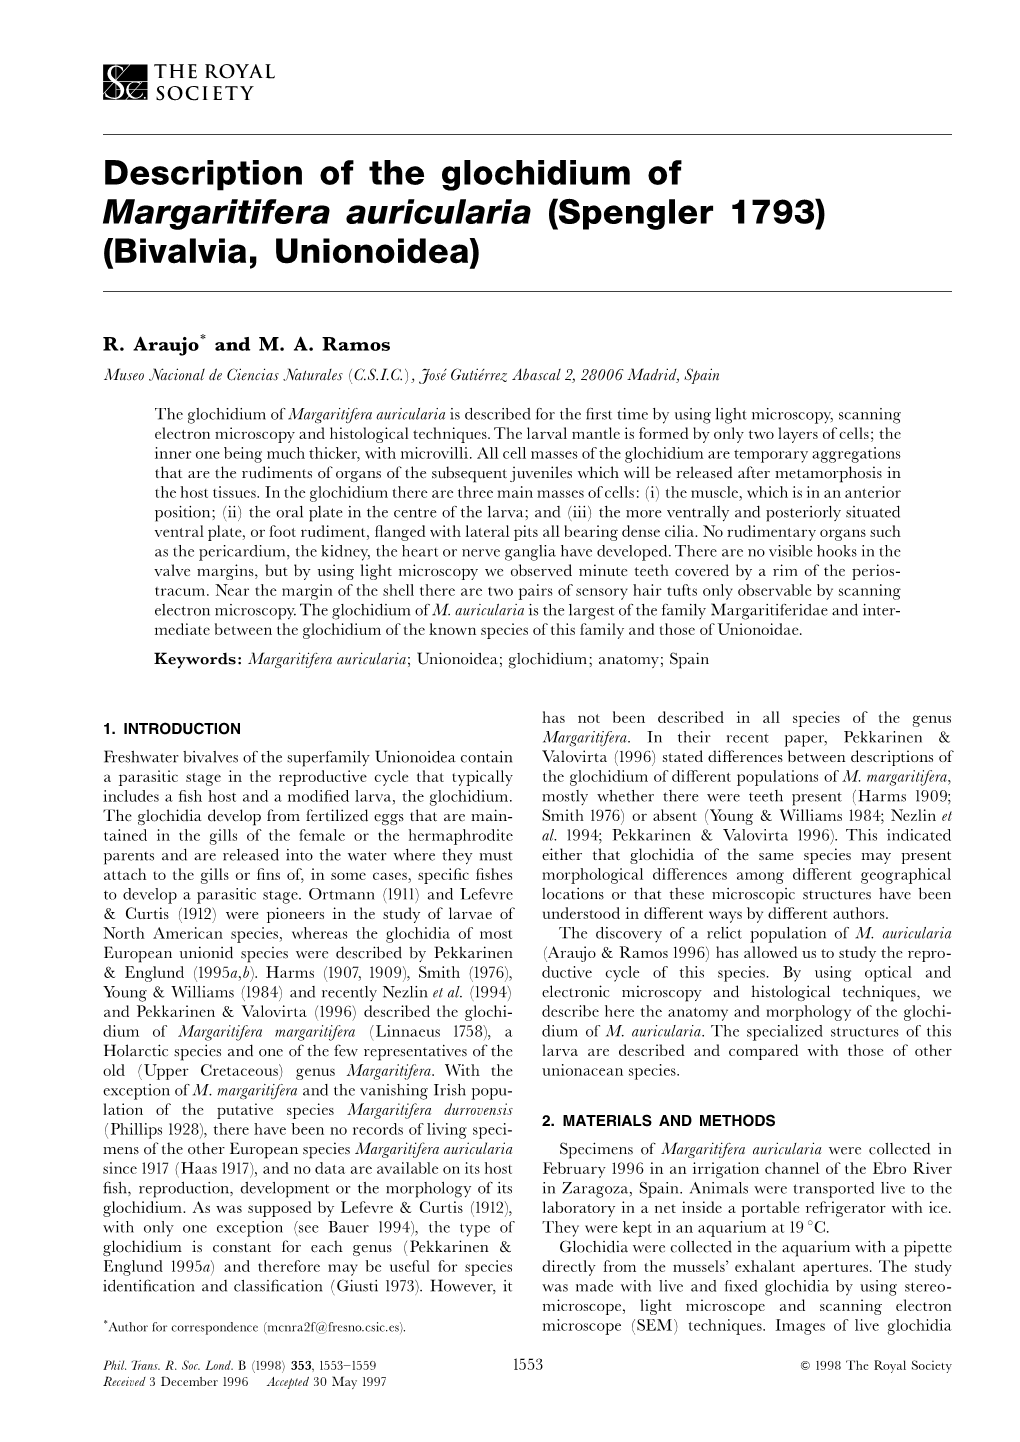 Description of the Glochidium of Margaritifera Auricularia (Spengler 1793) (Bivalvia, Unionoidea)